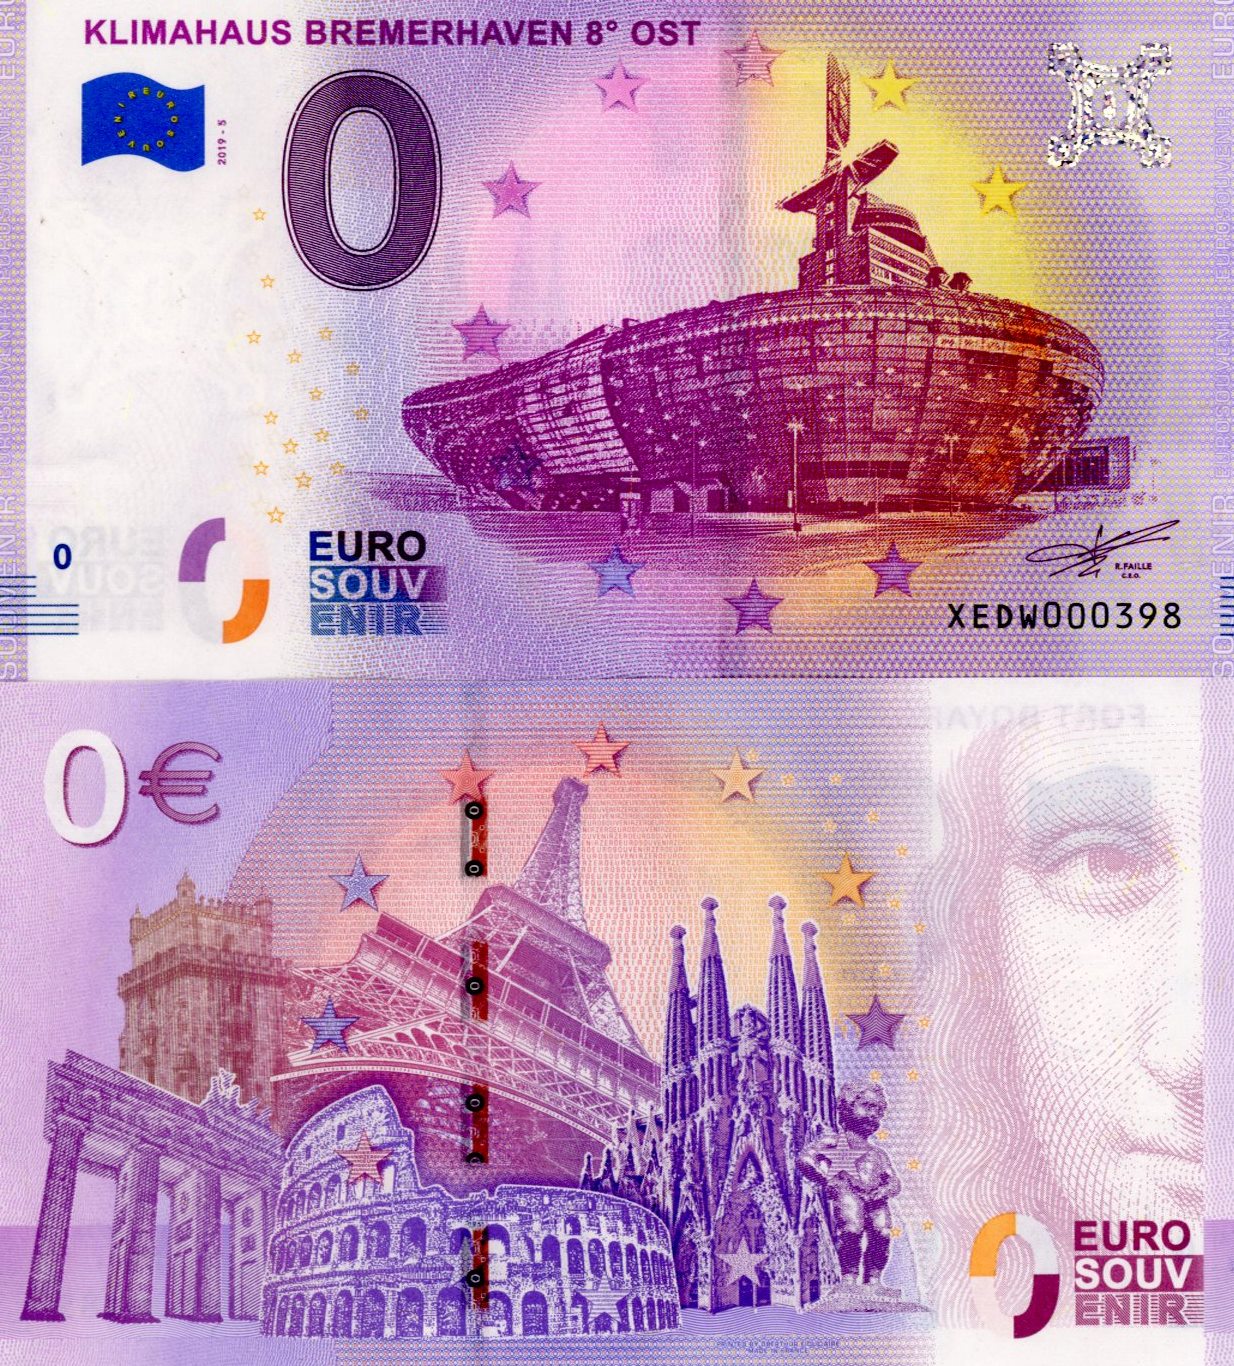 0 euro suvenír 2019/5 Nemecko UNC Klimahaus Bremerhaven 8° Ost